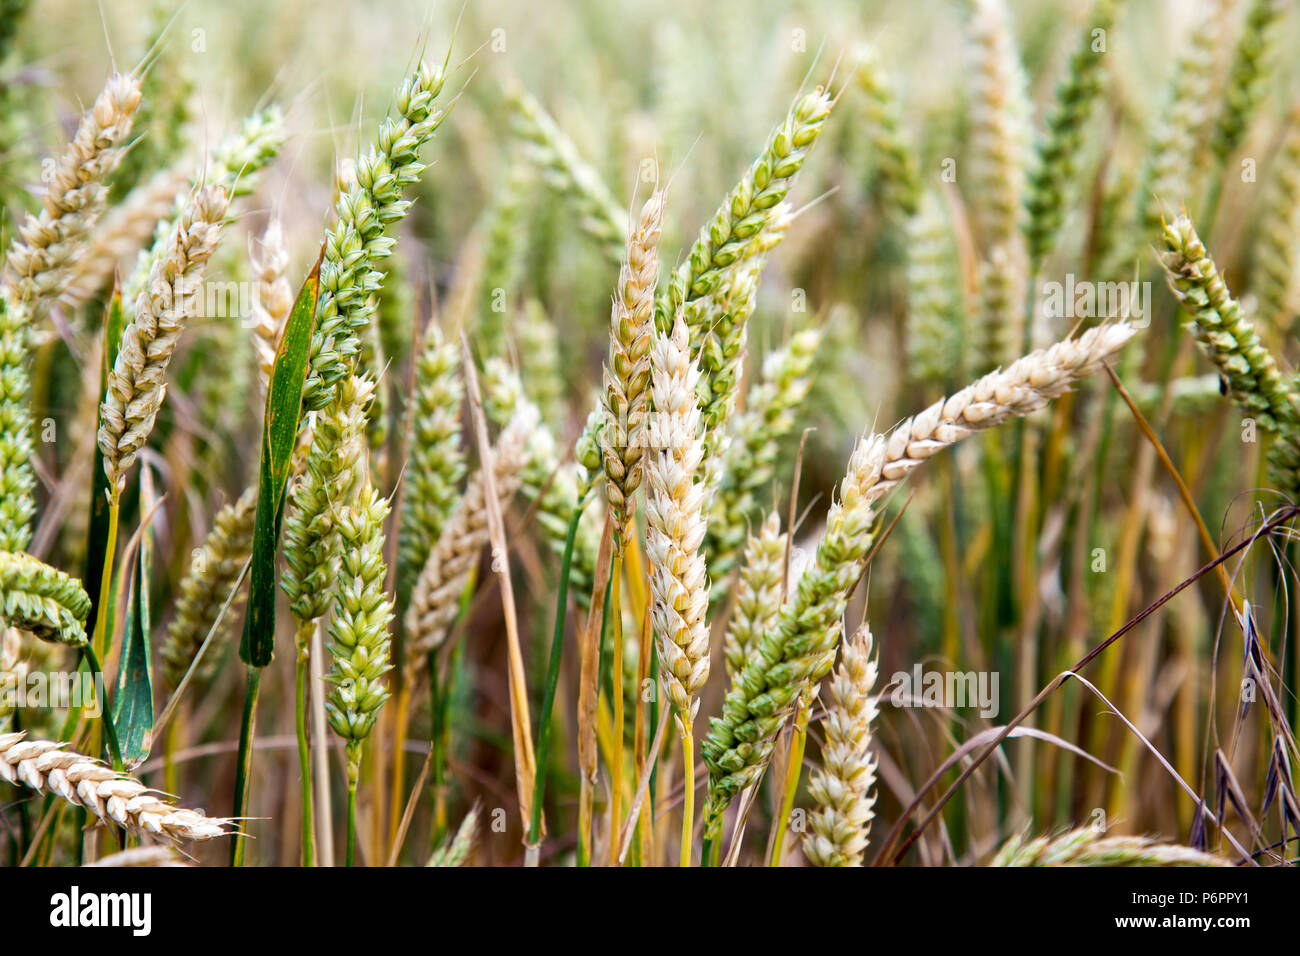 Close-up of les épis de blé dans un champ de blé, le Parc National des South Downs, UK Banque D'Images